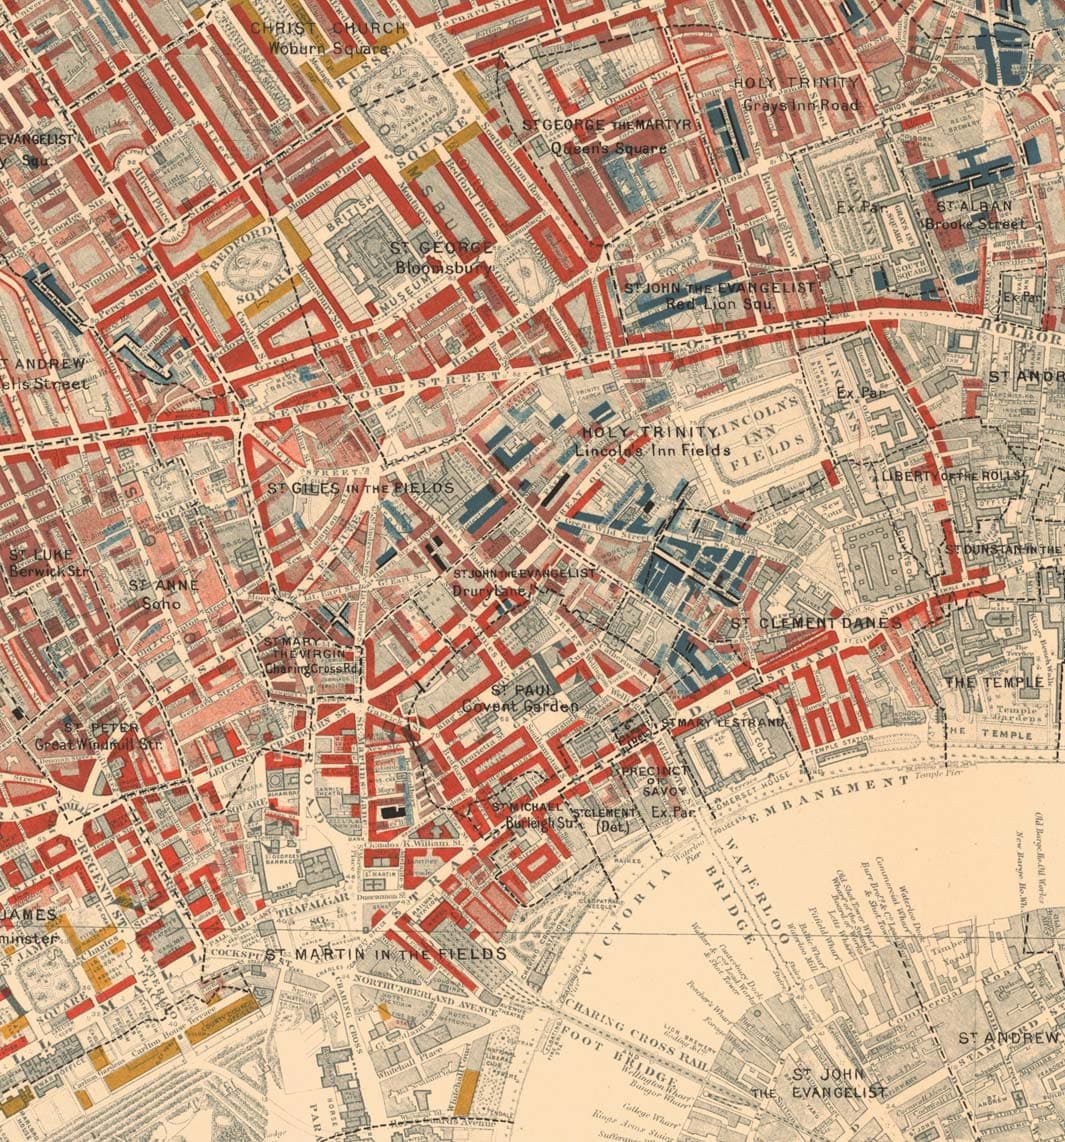 Mapa de la pobreza en Londres 1898-9, Distrito Central Oeste, por Charles Booth - Westminster, Camden, Ciudad de Londres, Islington - W1, WC1, WC2, EC1, N1